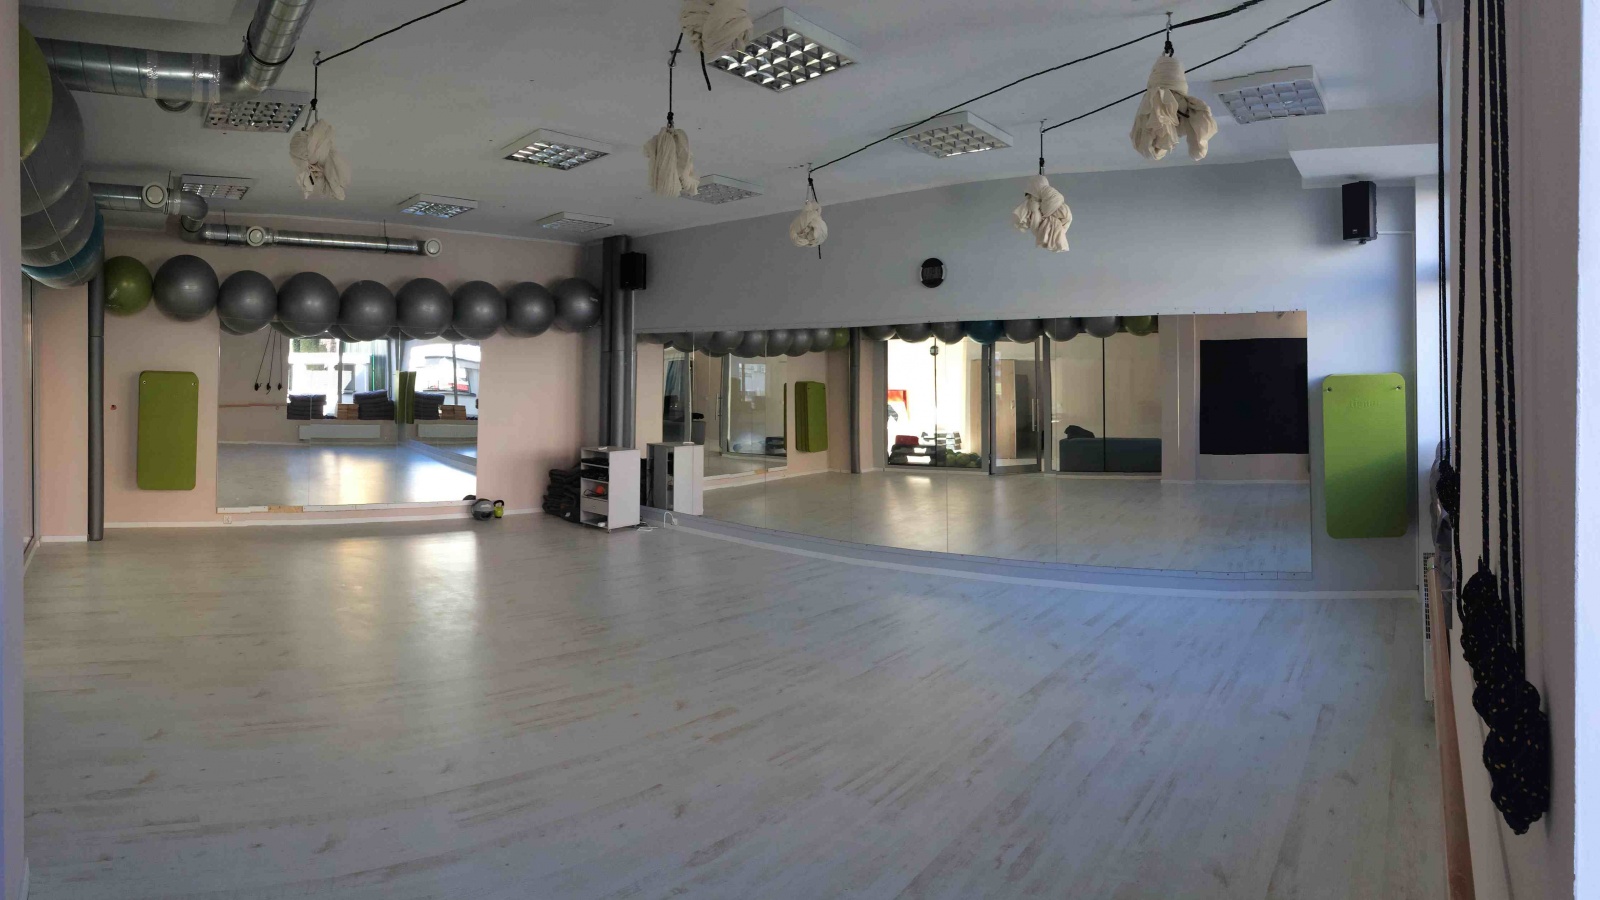 Ultrafit Studio Tańca i Fitness - taniec użytkowy Wrocław